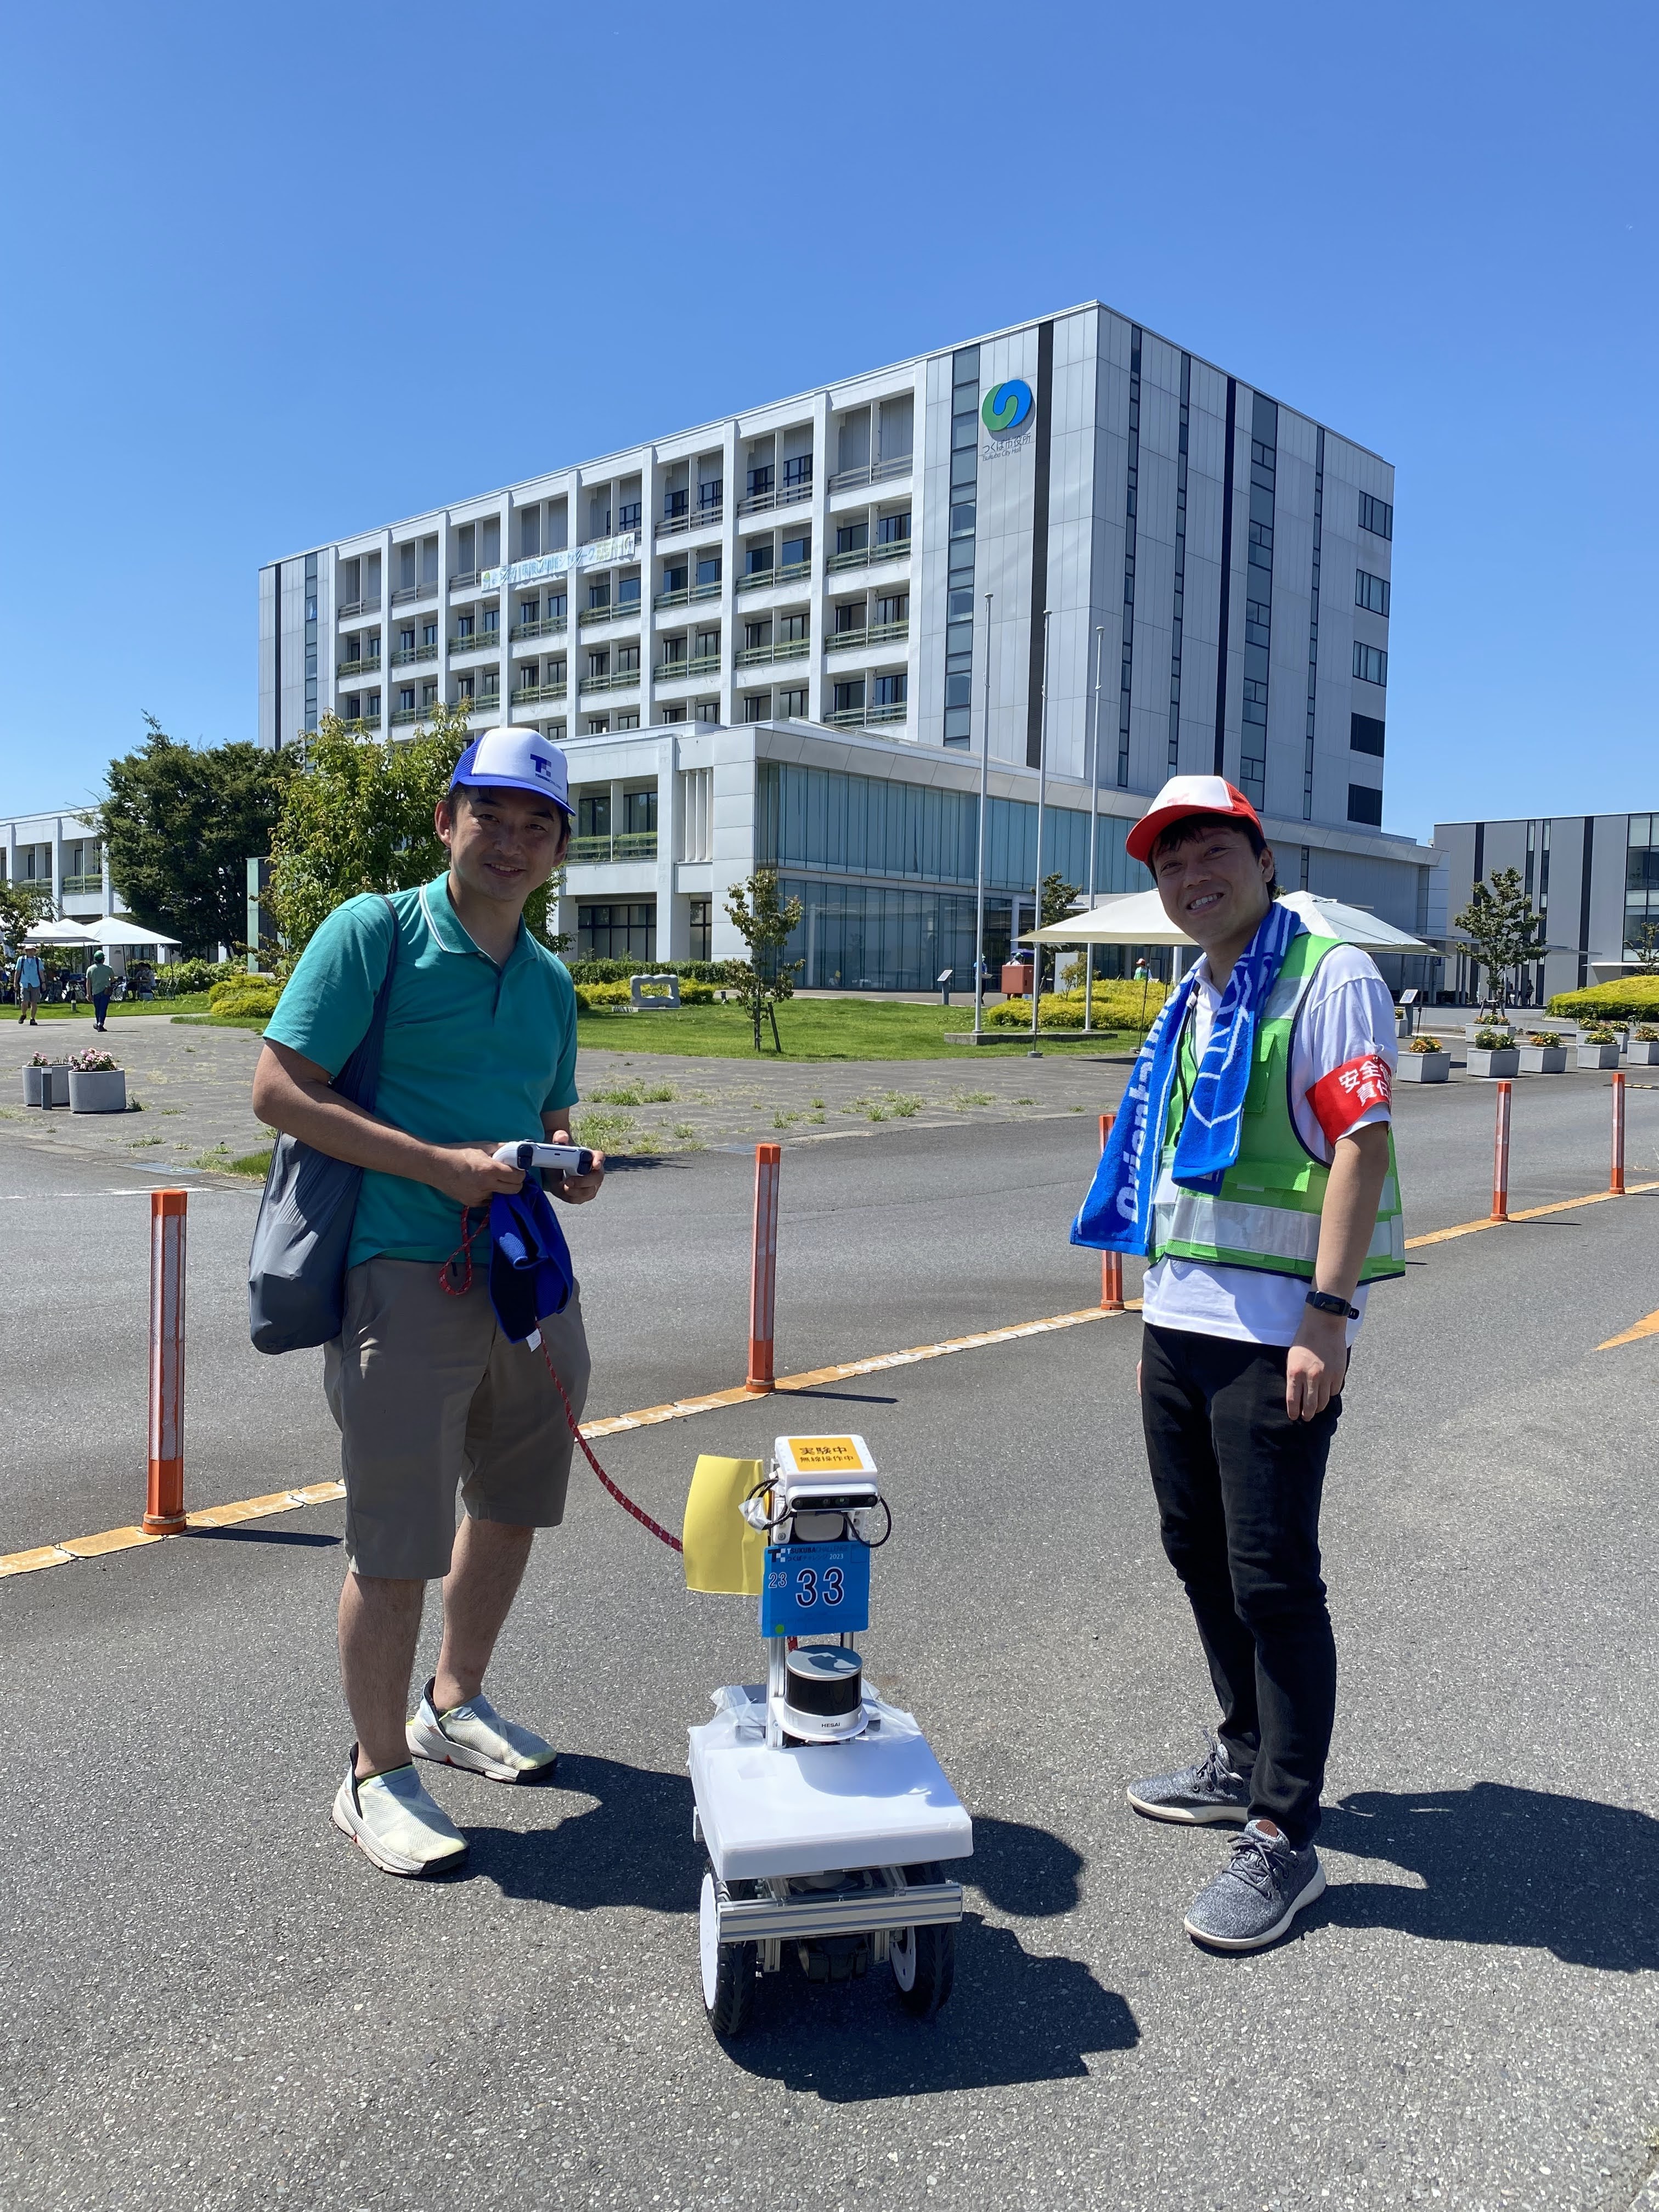 田中さんと男性が自律ロボットを挟んで立つ屋外の写真